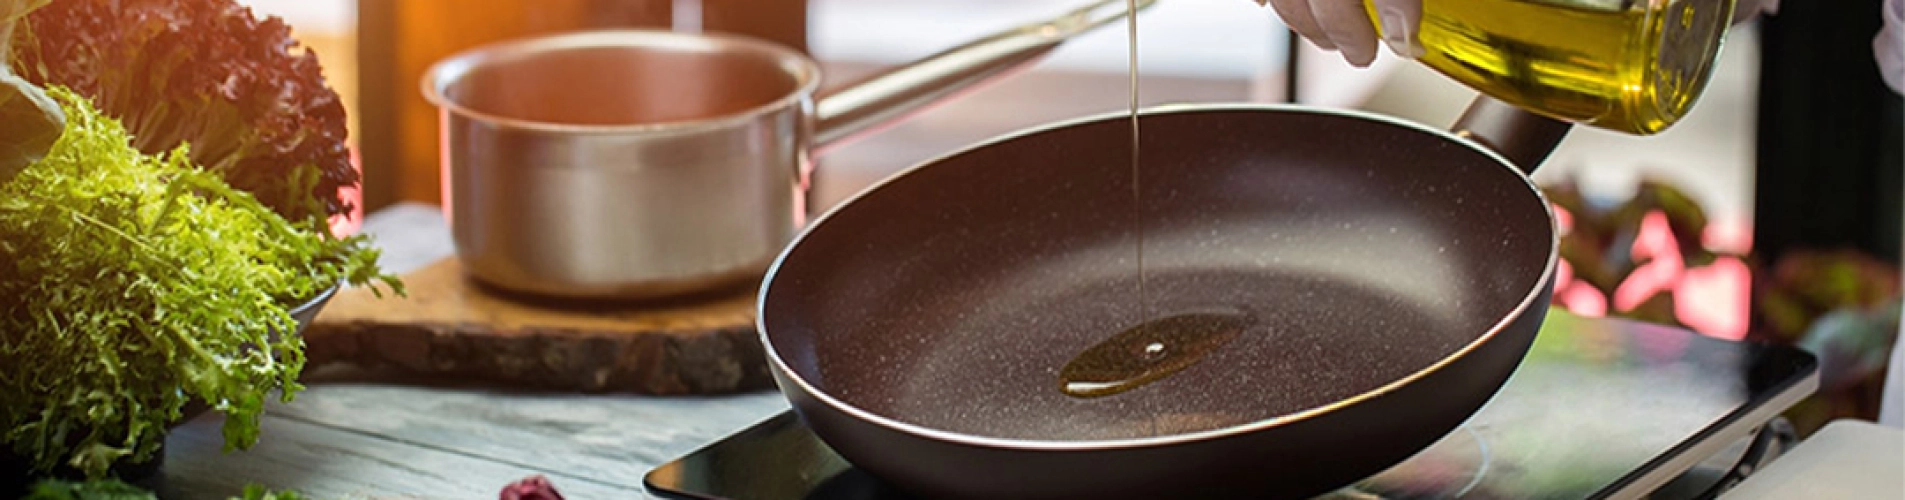 آیا روغن زیتون برای سرخ کردن، گریل کردن و پخت و پز مناسب است؟